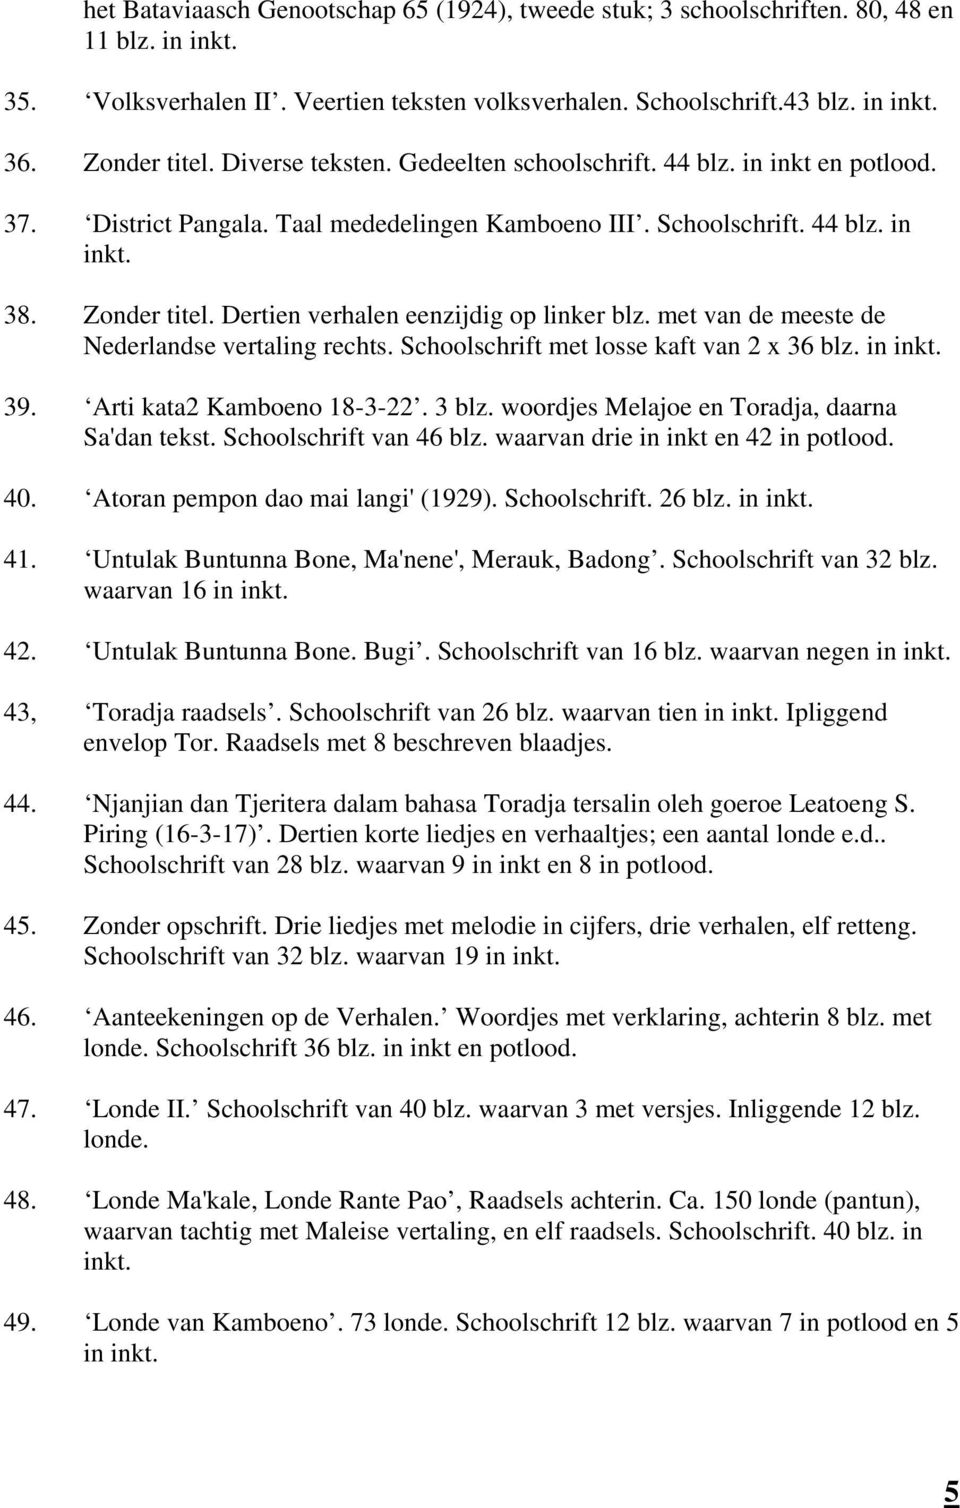 Dertien verhalen eenzijdig op linker blz. met van de meeste de Nederlandse vertaling rechts. Schoolschrift met losse kaft van 2 x 36 blz. in inkt. 39. Arti kata2 Kamboeno 18-3-22. 3 blz.